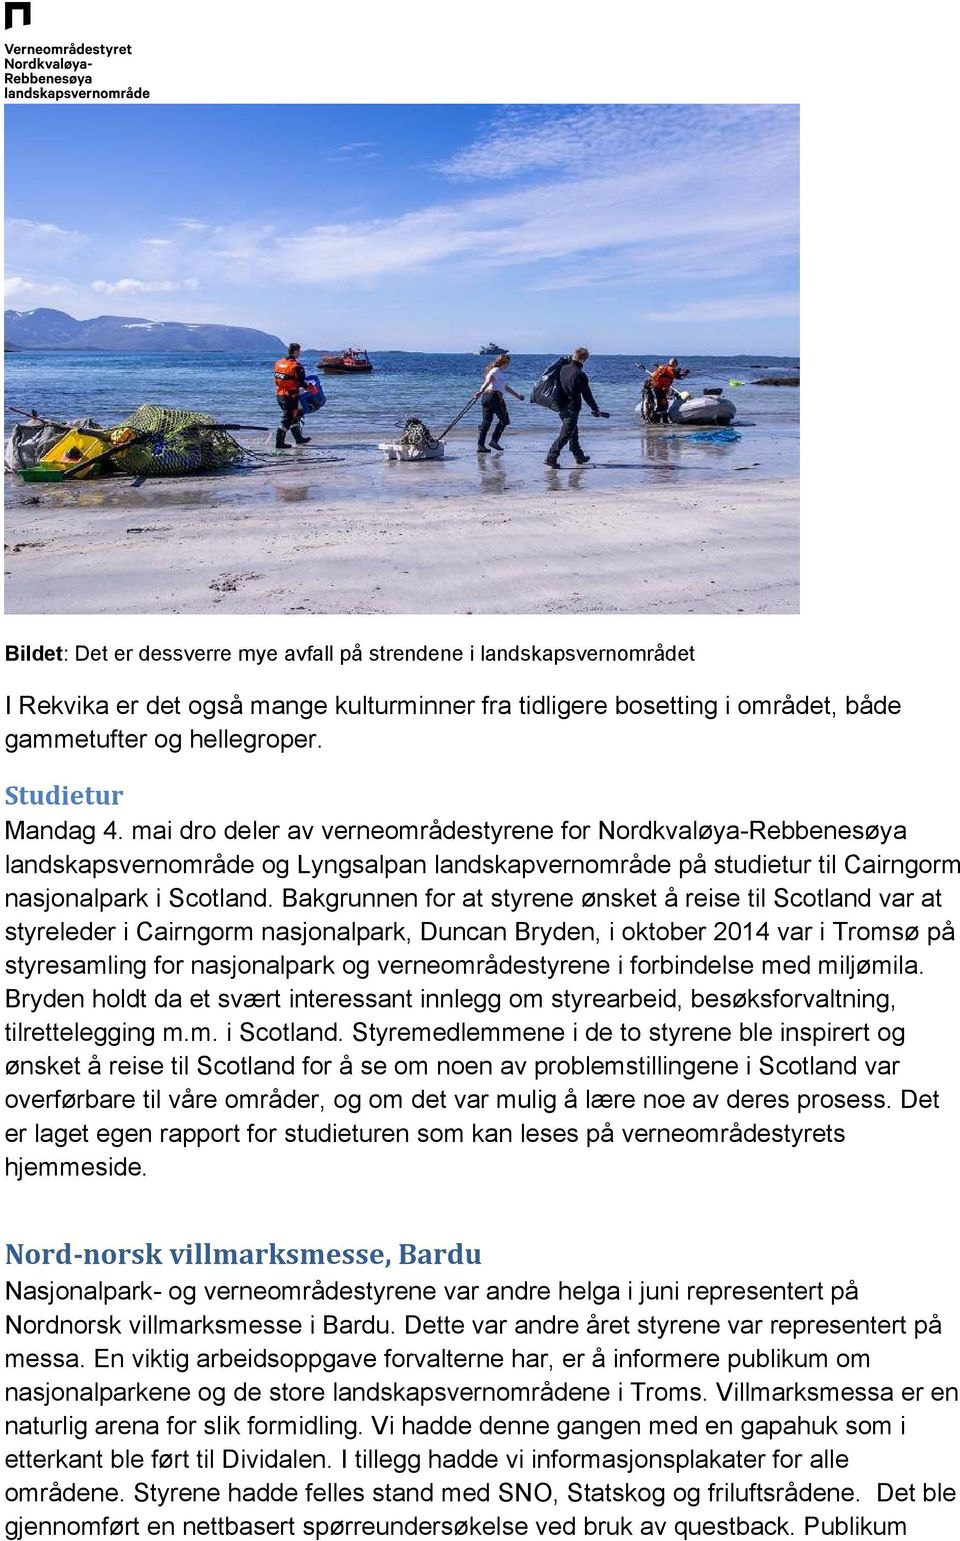 Bakgrunnen for at styrene ønsket å reise til Scotland var at styreleder i Cairngorm nasjonalpark, Duncan Bryden, i oktober 2014 var i Tromsø på styresamling for nasjonalpark og verneområdestyrene i